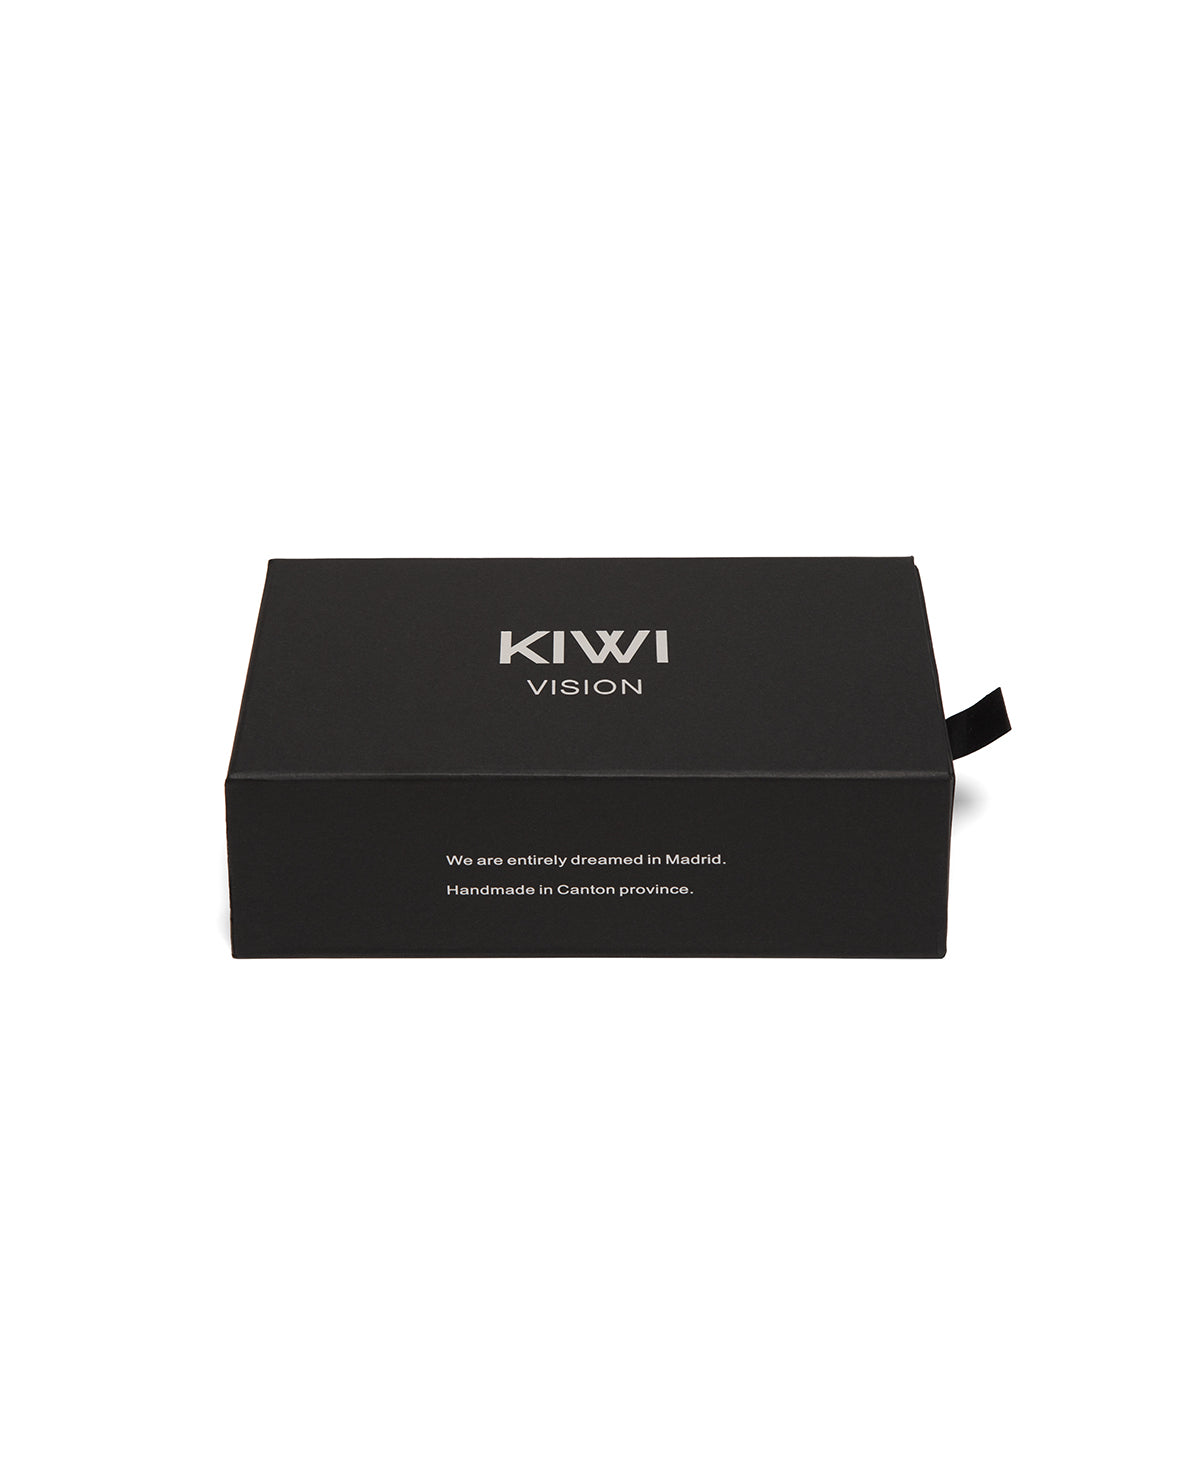 Kiwivision eyewear packaging